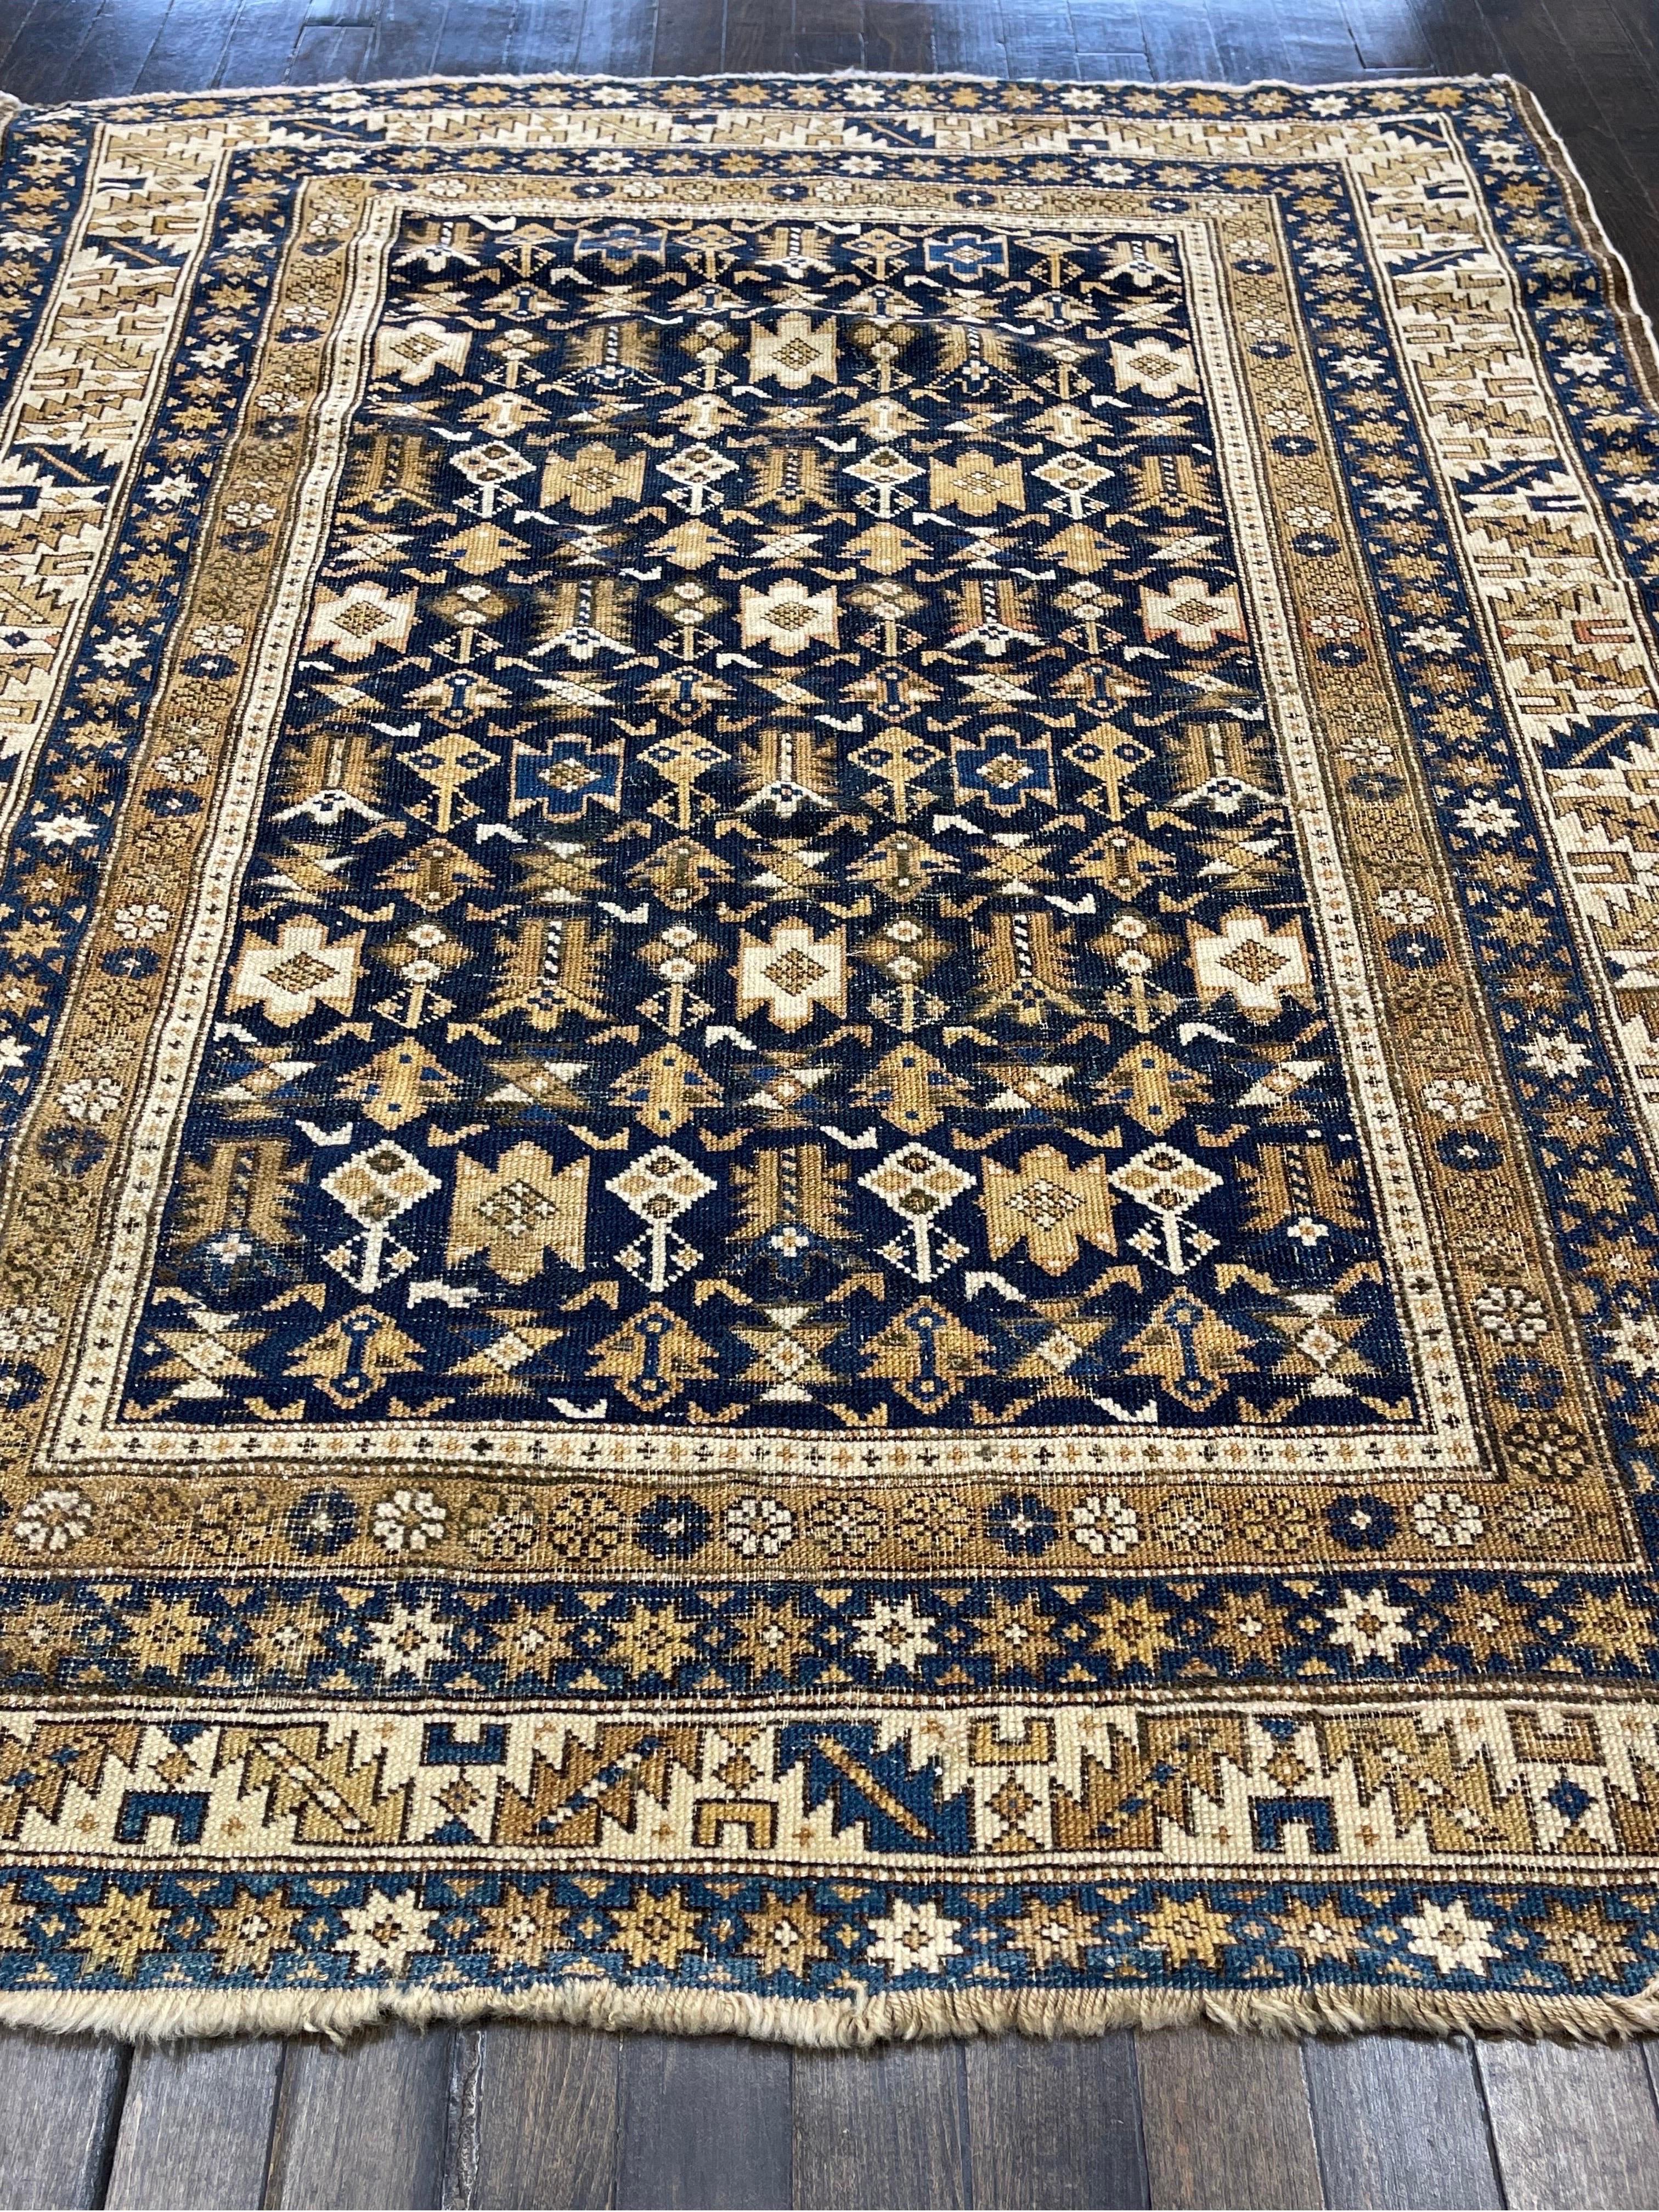 Tapis noué d'une extrême épaisseur, ce tapis a été fabriqué dans la ville de Shirvan, située dans les montagnes du Caucase. Le champ a des fleurs semblables à des arbustes disposées avec un treillis sur un fond bleu indigo.

Les six bordures de